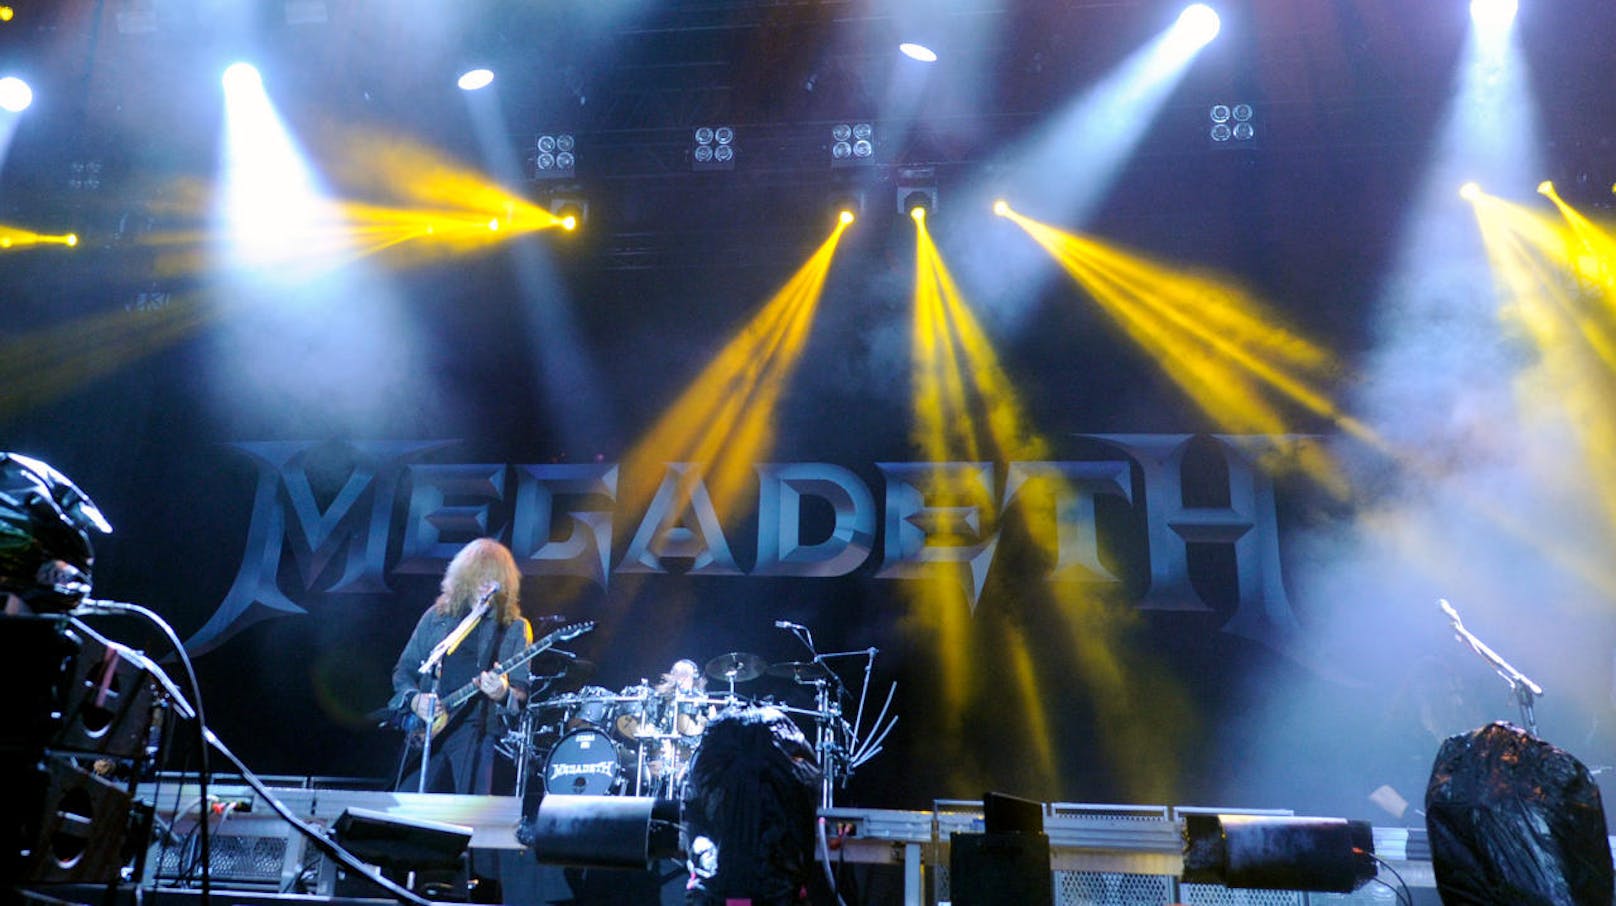 Sänger und Gitarrist Dave Mustaine von der Band "Megadeth" während eines Konzertes auf der "Red Stage" im Rahmen des "Nova Rock 2018" Festivals am Donnerstag, 14. Juni 2018 im burgenländischen Nickelsdorf.